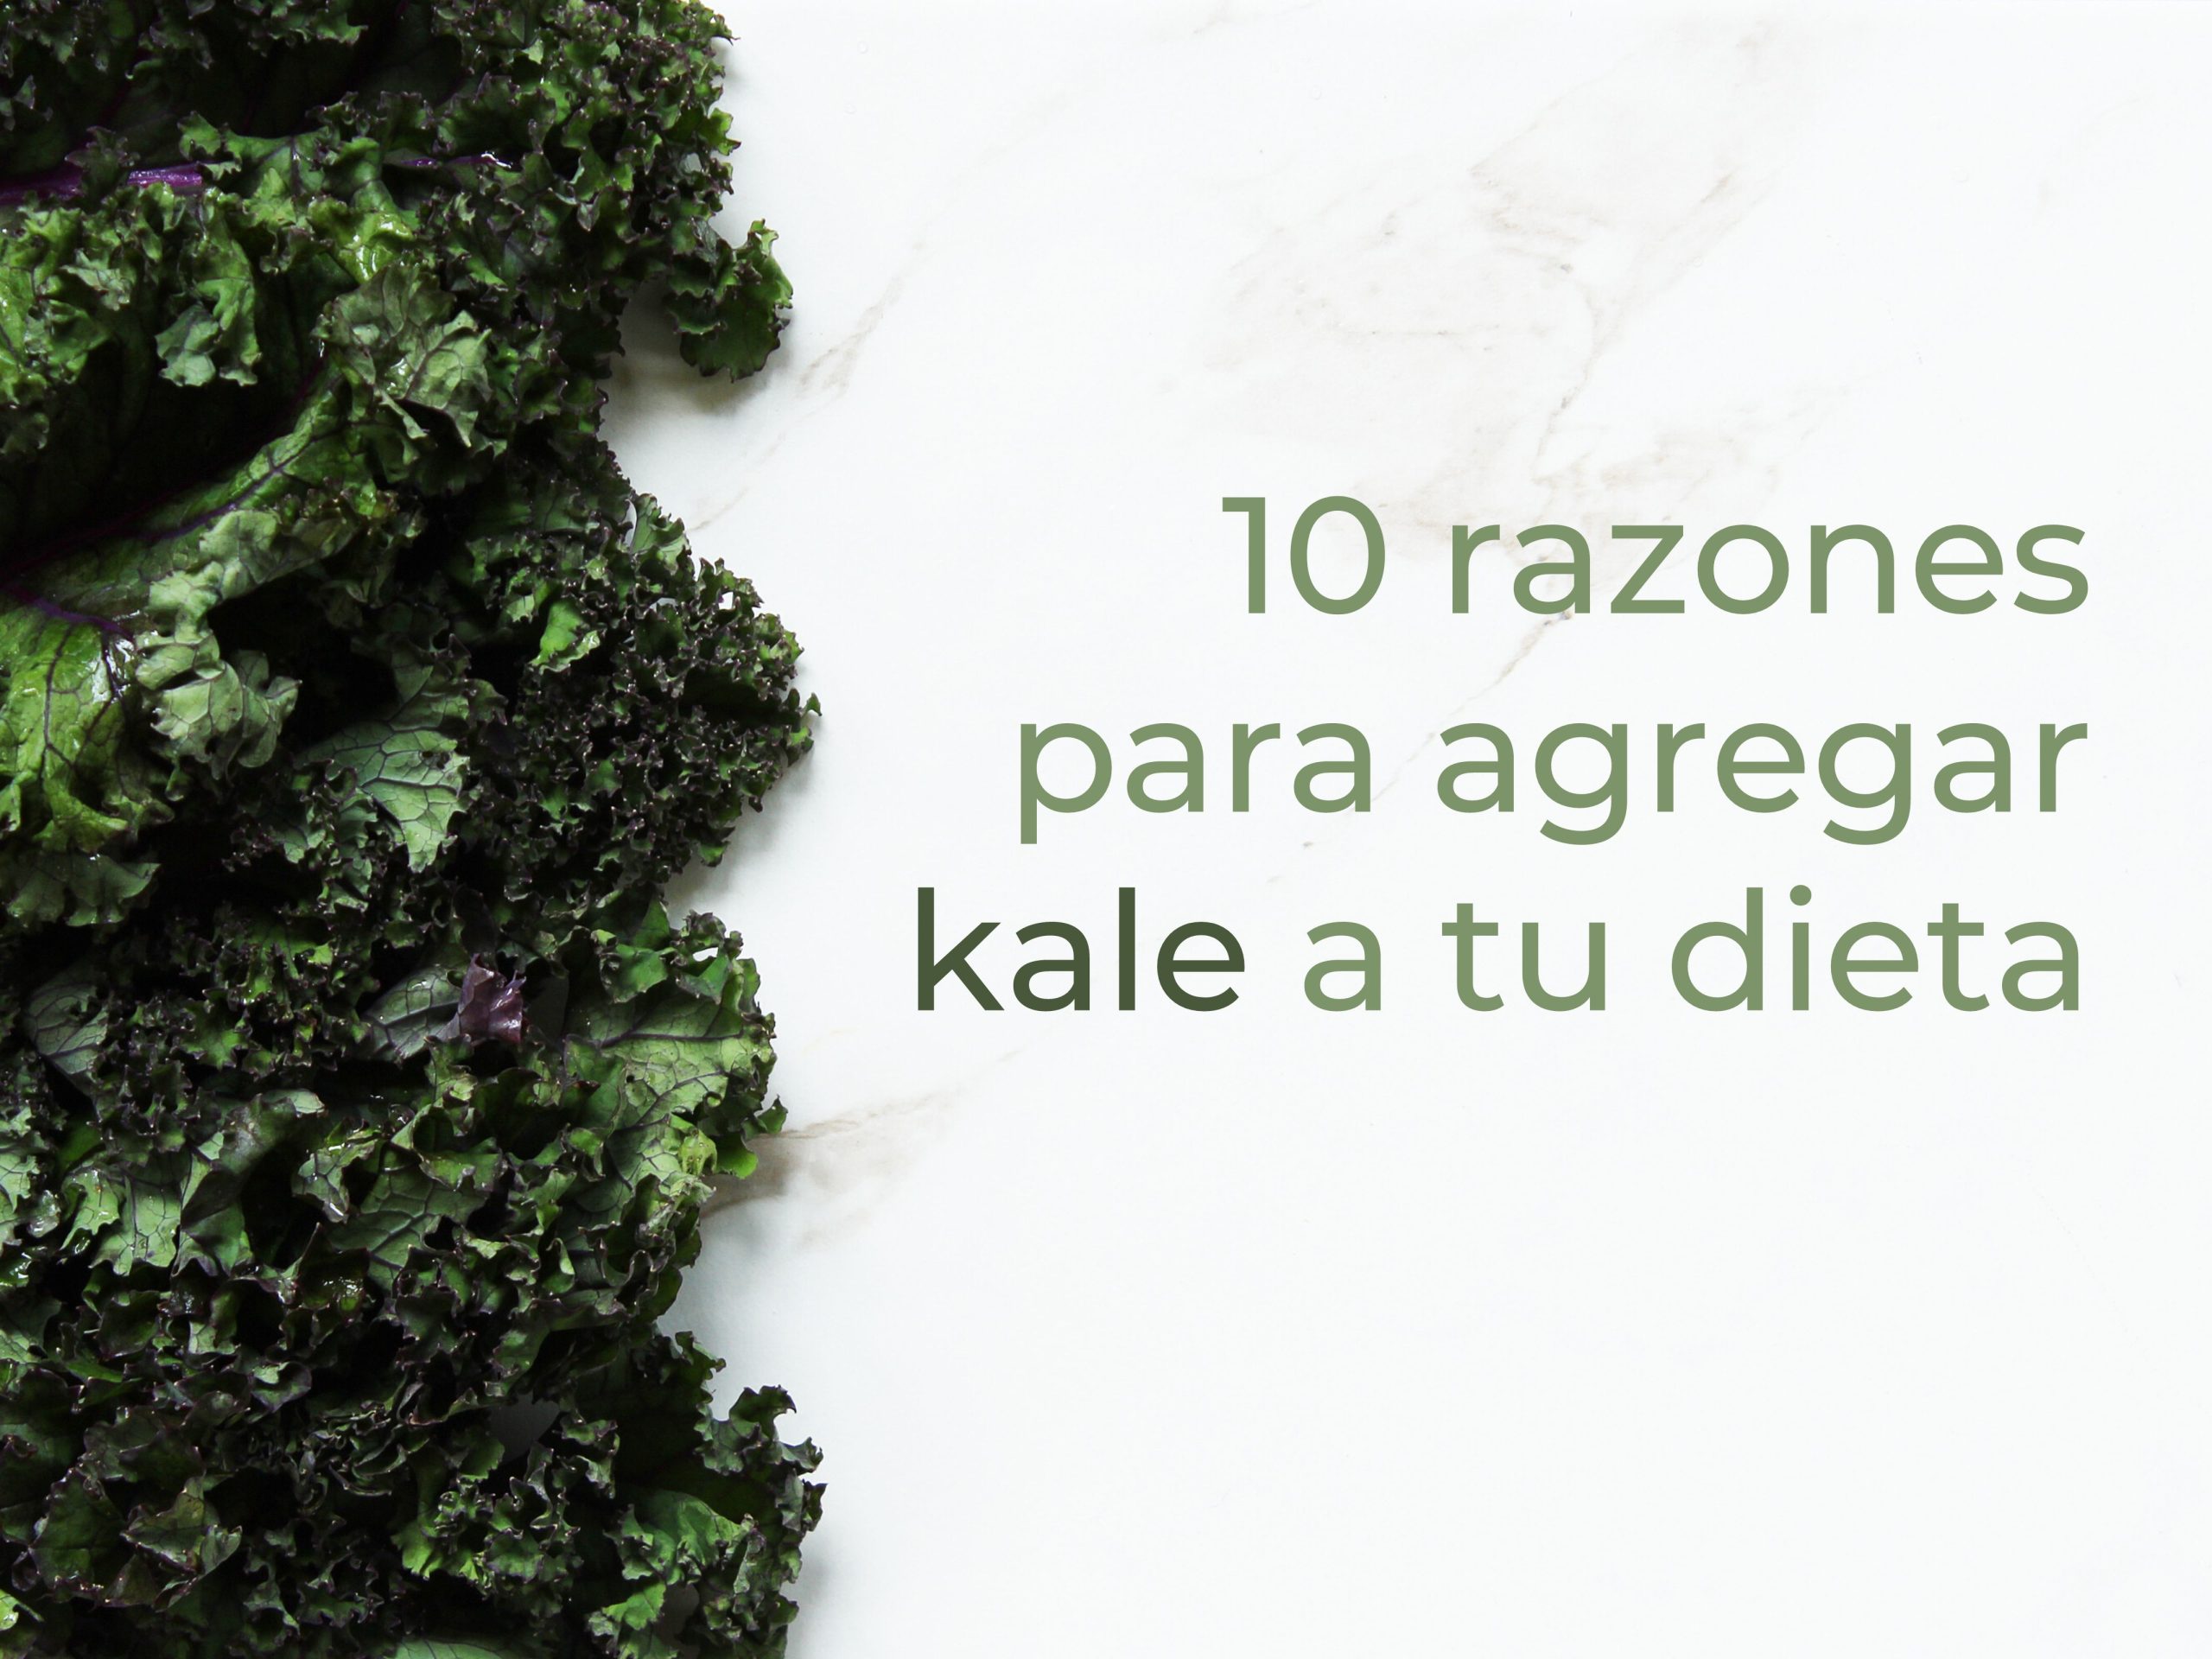 10 razones para agregar kale a tu dieta